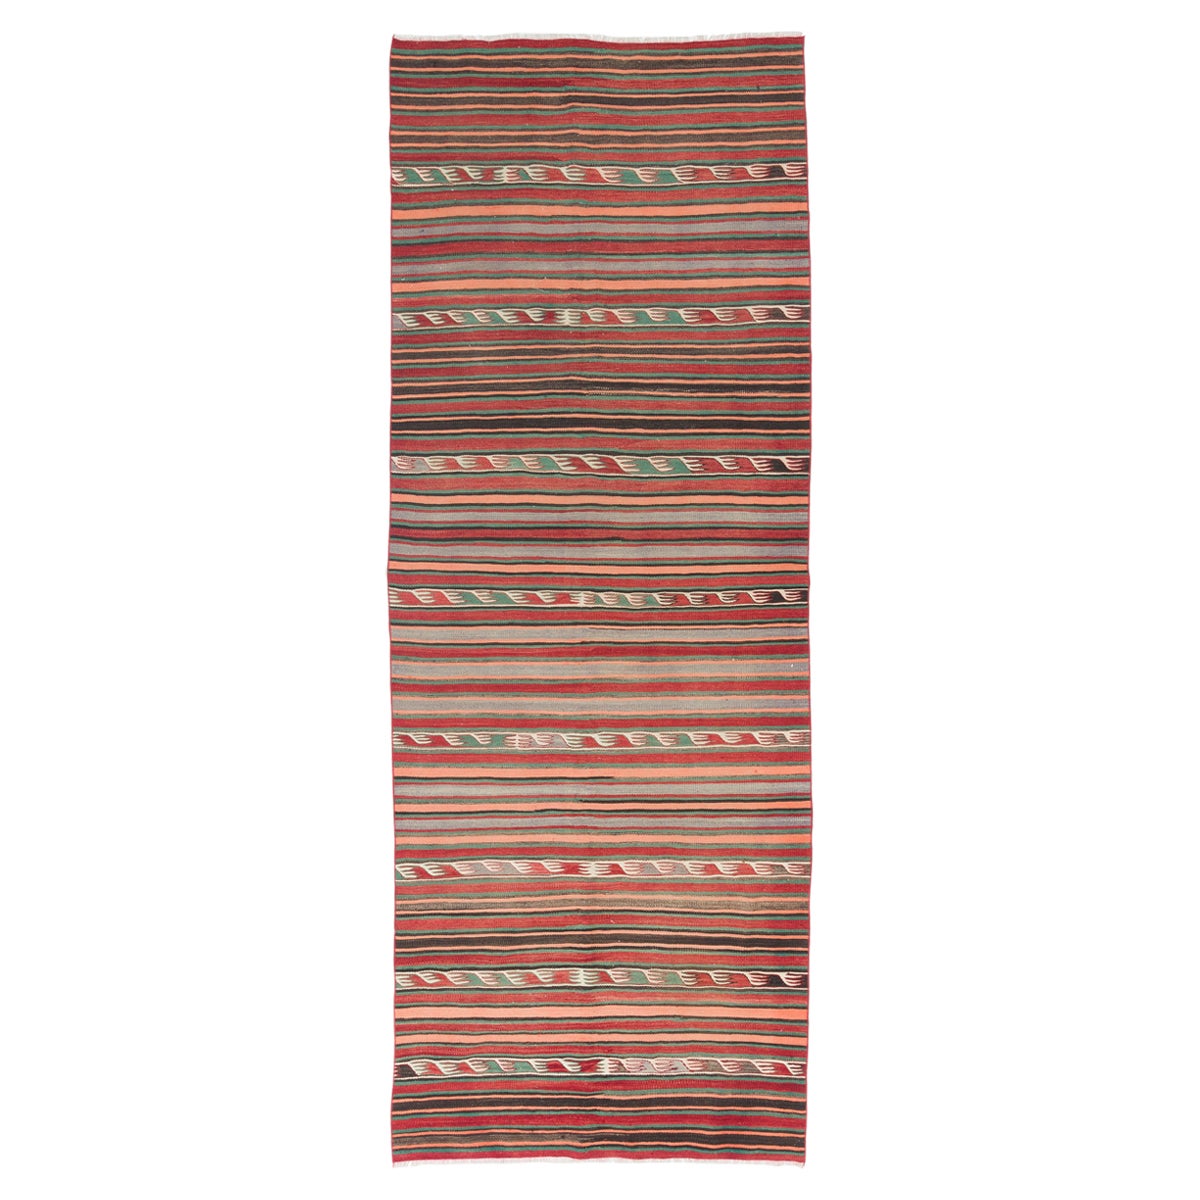 4.3x11.4 Ft Colorful Nomadic Kilim Rug, 100% Wool. Vintage Striped Runner Carpet For Sale